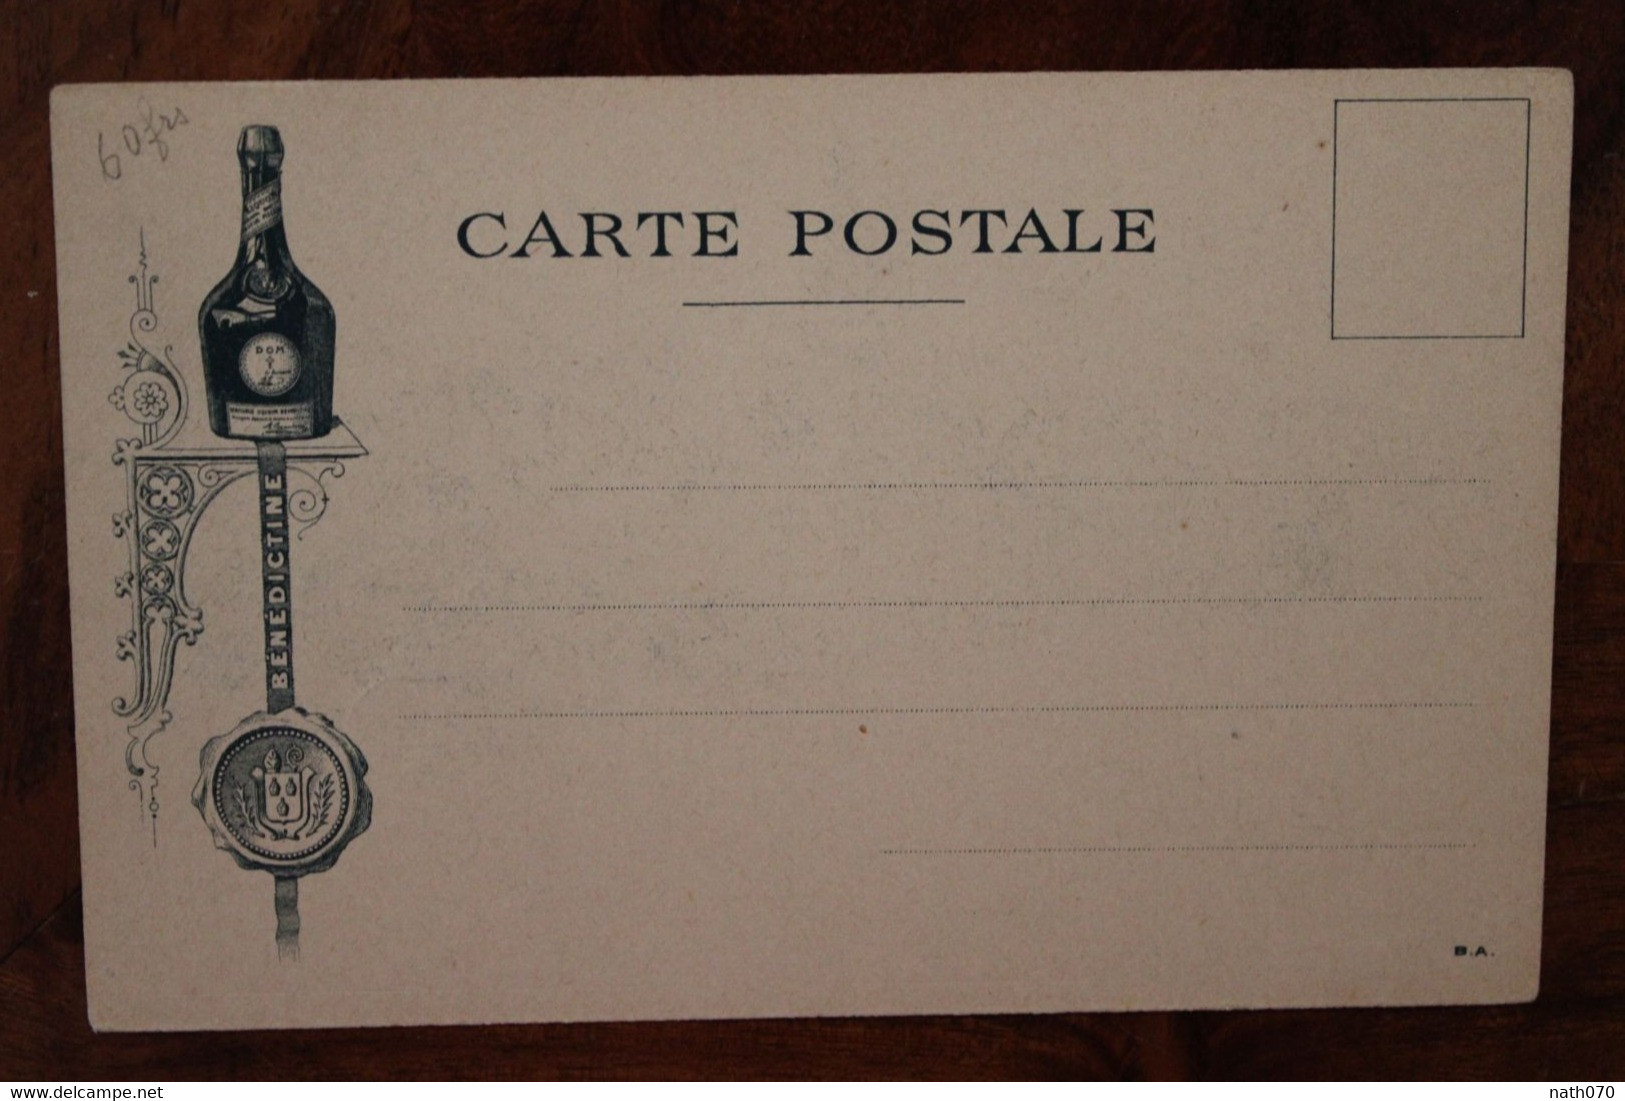 1910's CPA Ak Publicité Pub Illustrateur Vue De La Bénédictine à Fécamp - Werbepostkarten